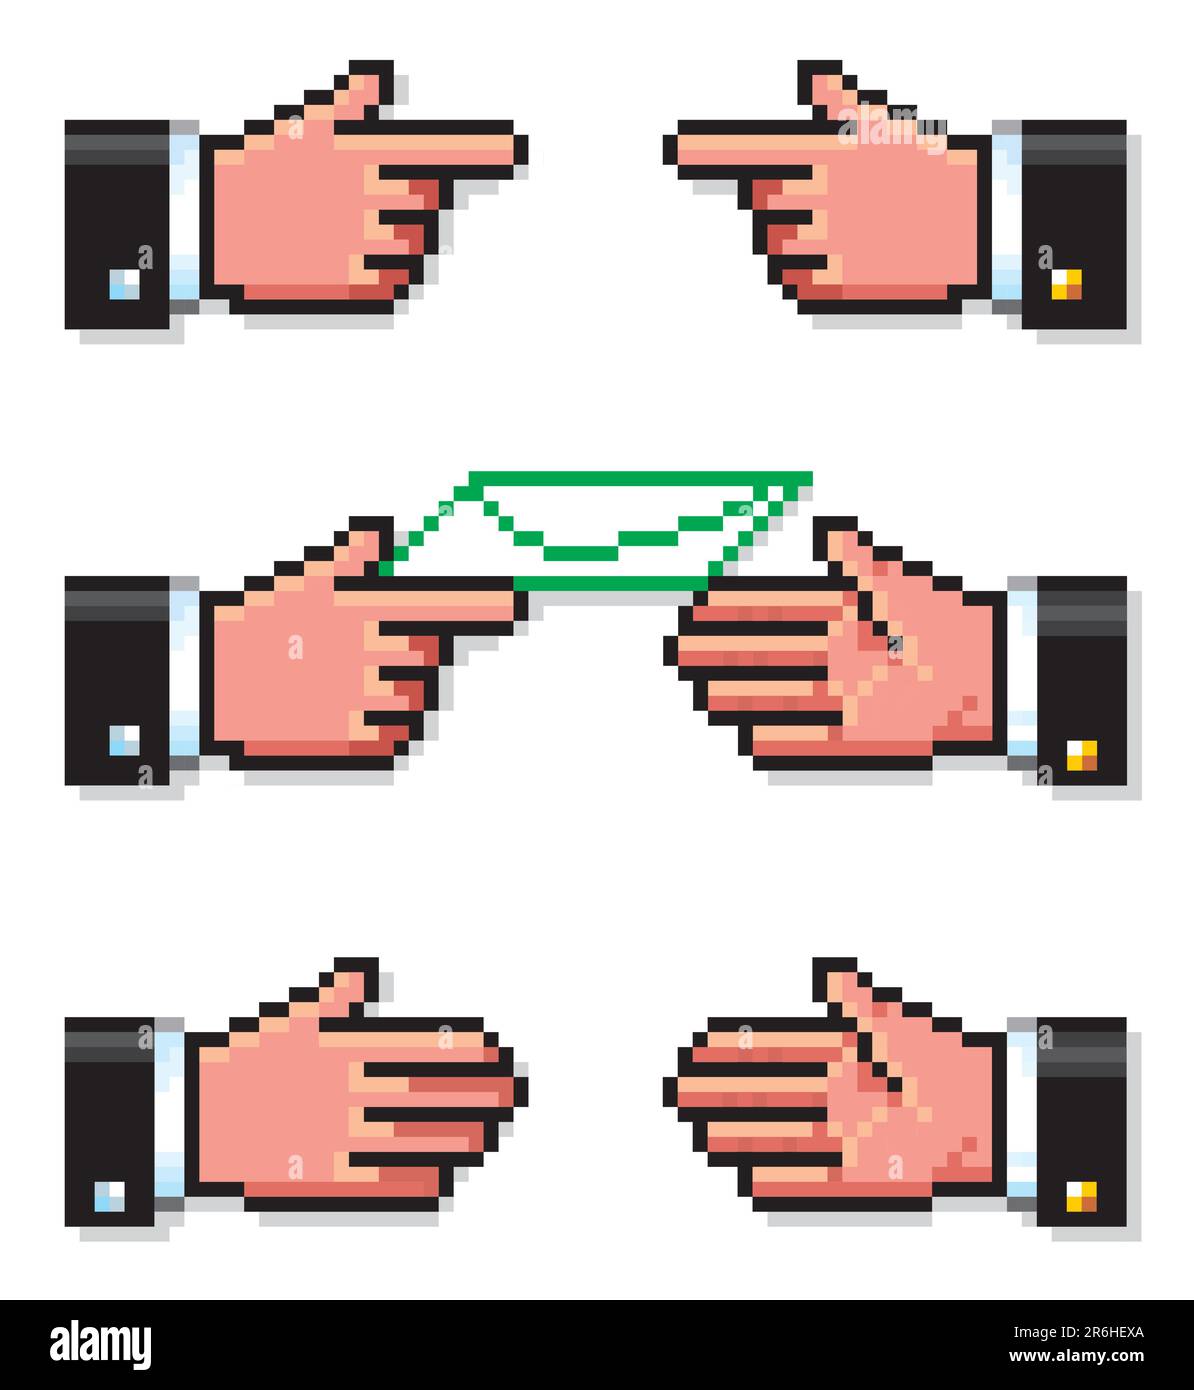 Eine Reihe von Pixelhandsymbolen, die drei Schritte einer Verhandlung vorschlagen: Diskussion, Vorschlag und Vereinbarung. Stock Vektor